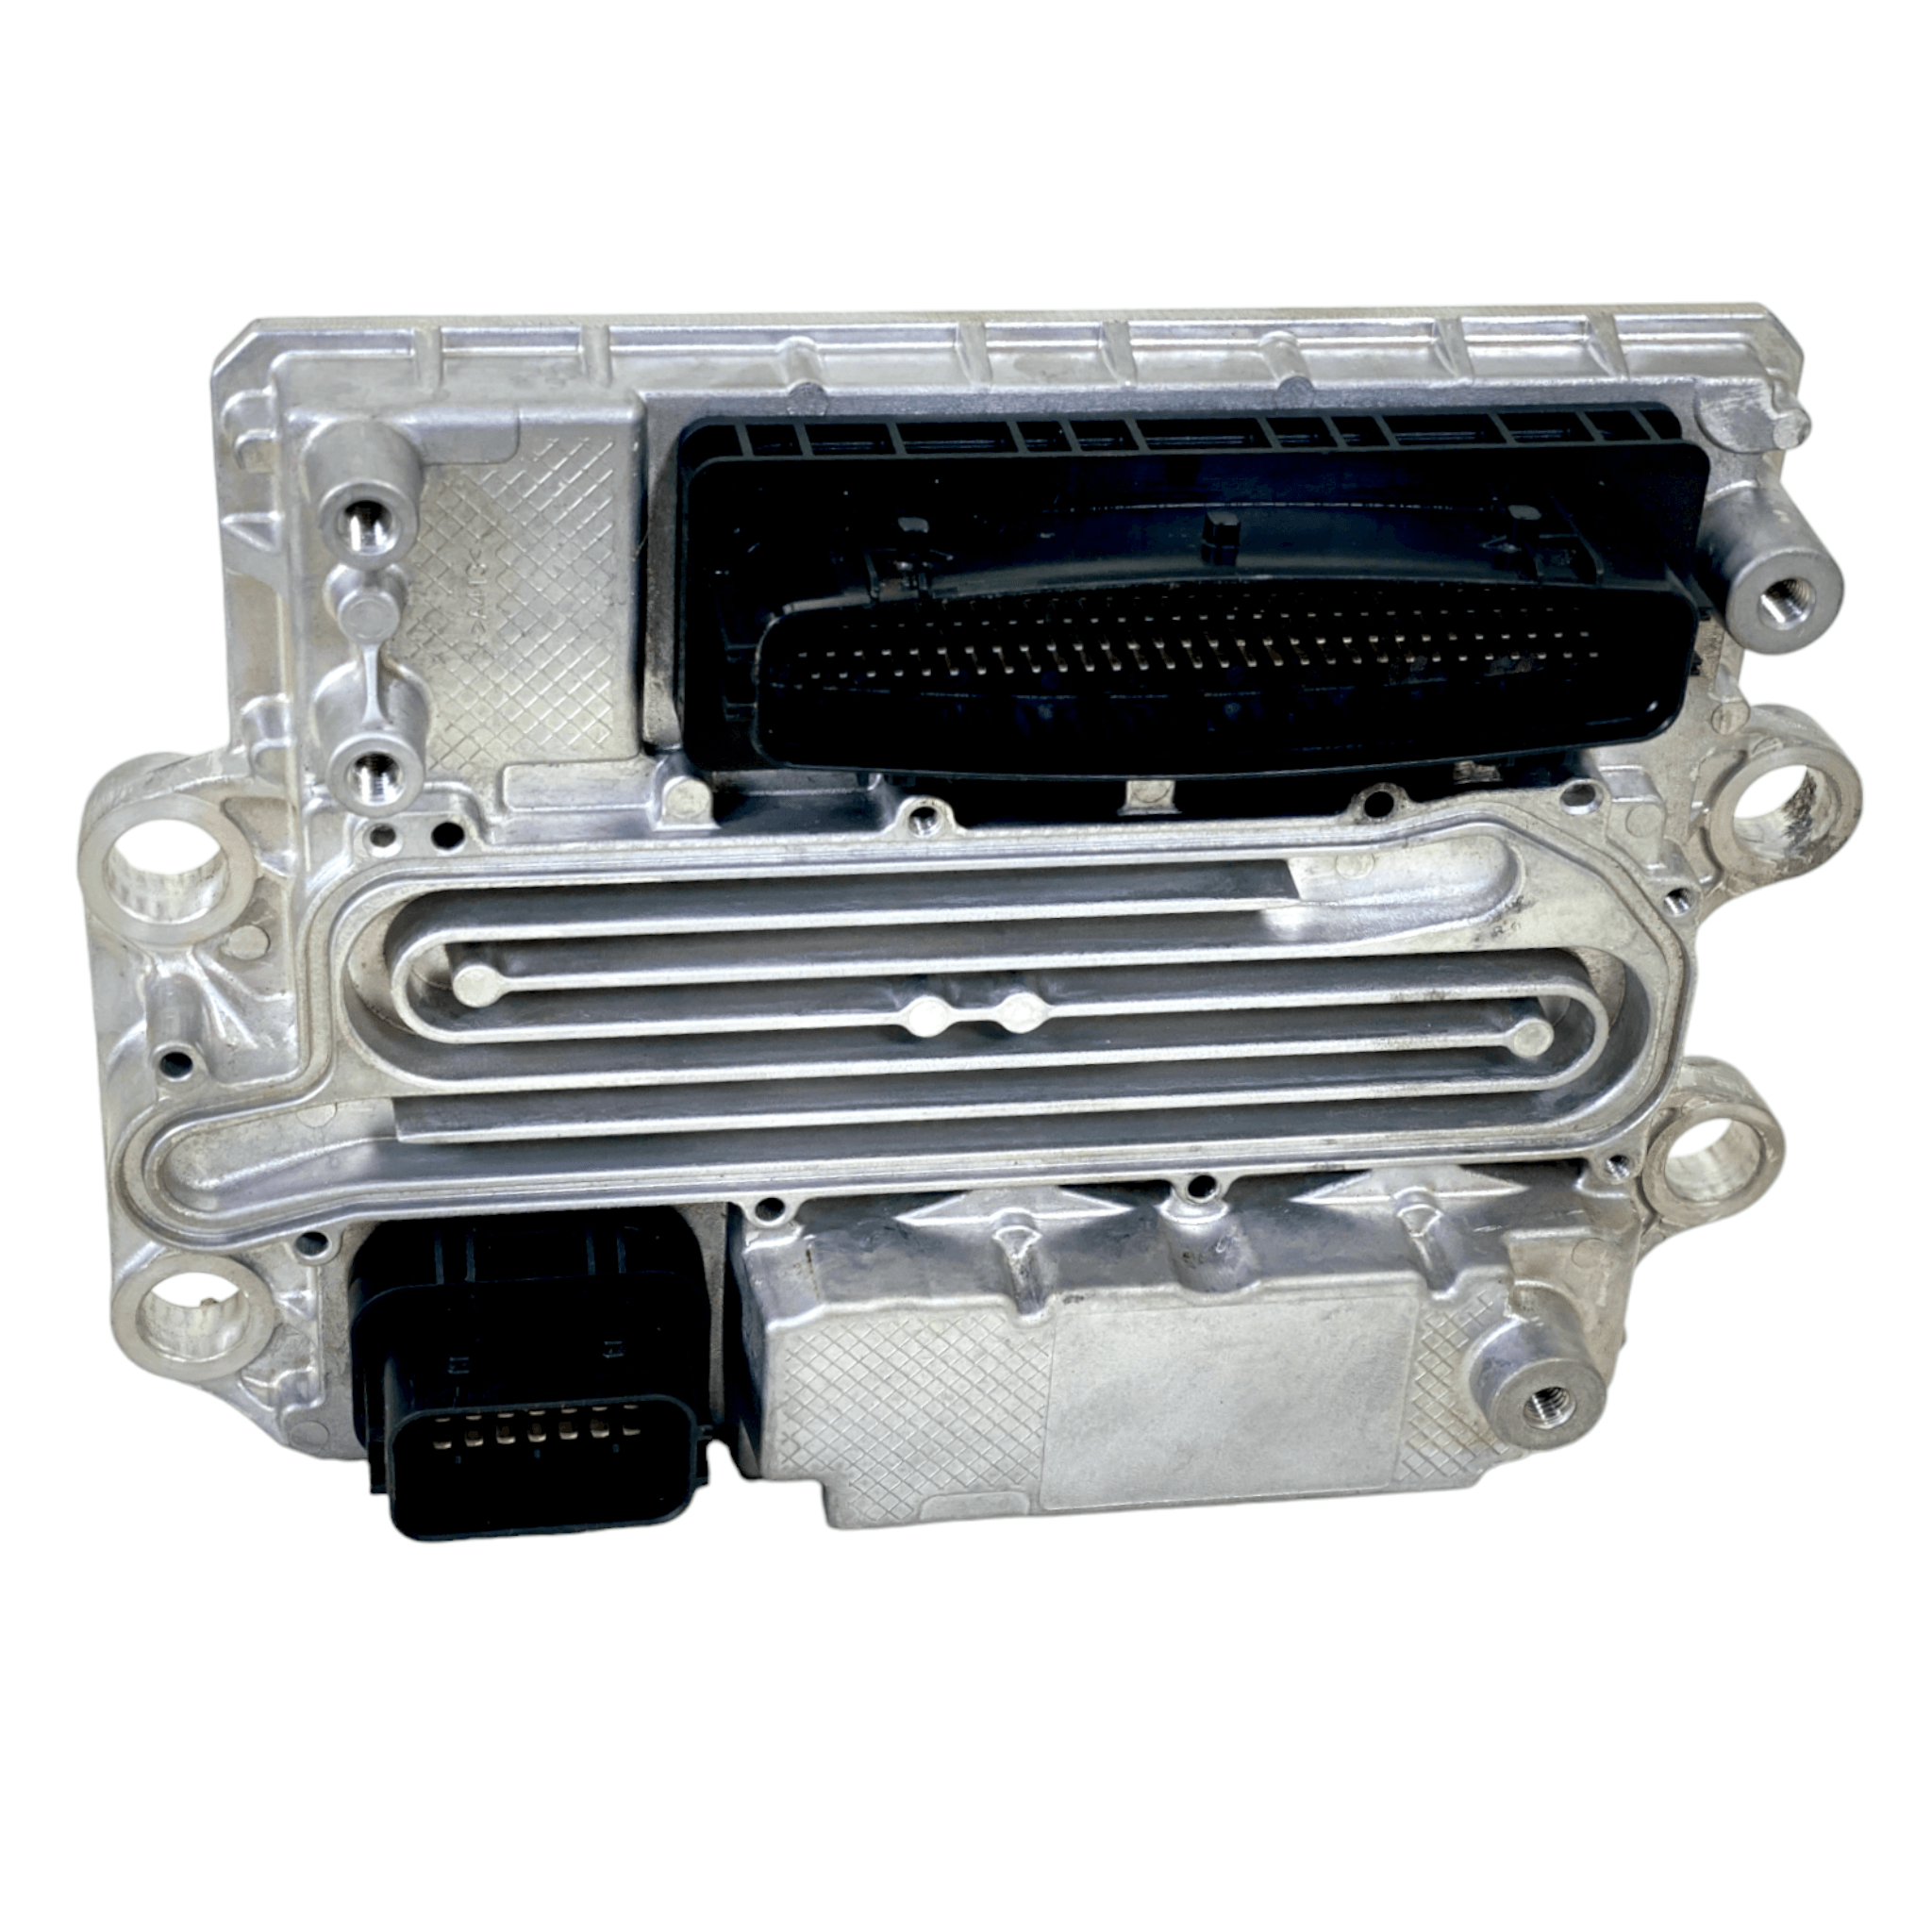 A0004465954 Genuine Detroit Diesel® Ecu Acm2.1 Aftertreatment Control Module Dd13 Dd15 Dd16 Ghg17 Evo - ADVANCED TRUCK PARTS